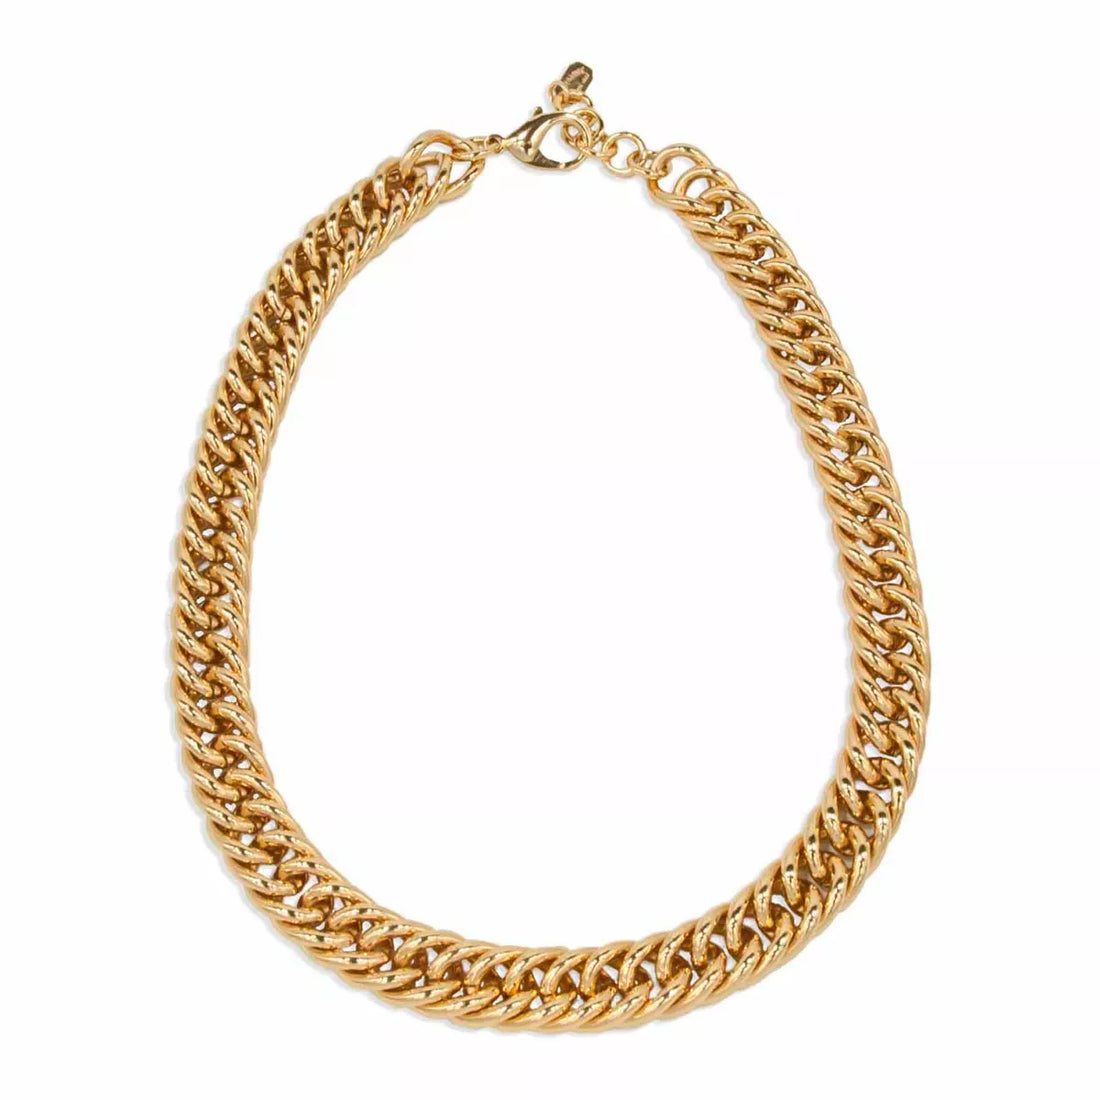 Grumette chain necklace